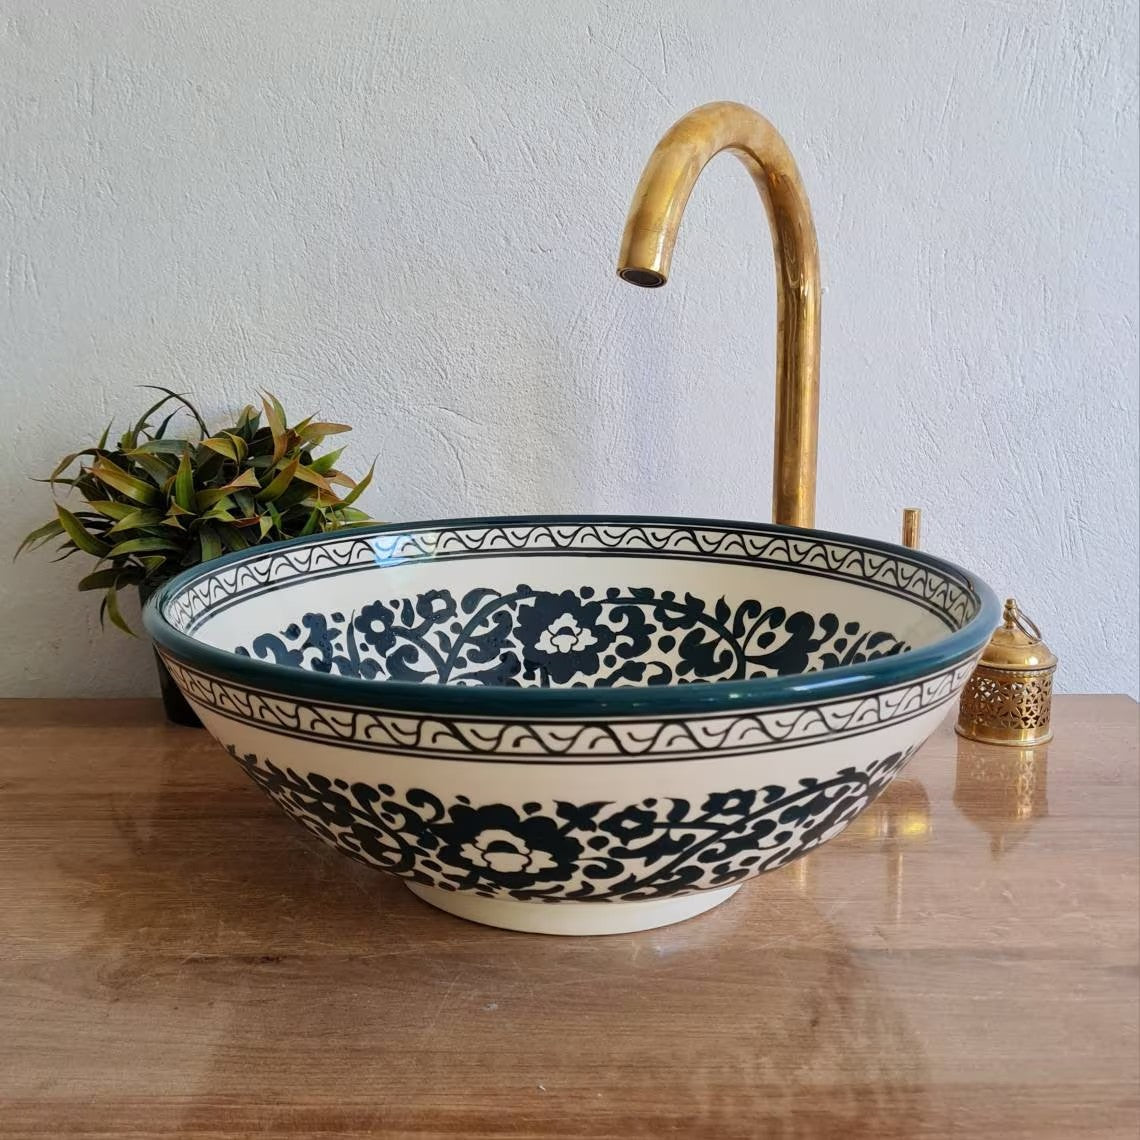 Moroccan sink | moroccan ceramic sink | bathroom sink | moroccan bathroom basin | cloakroom basin | Bleu sink #152